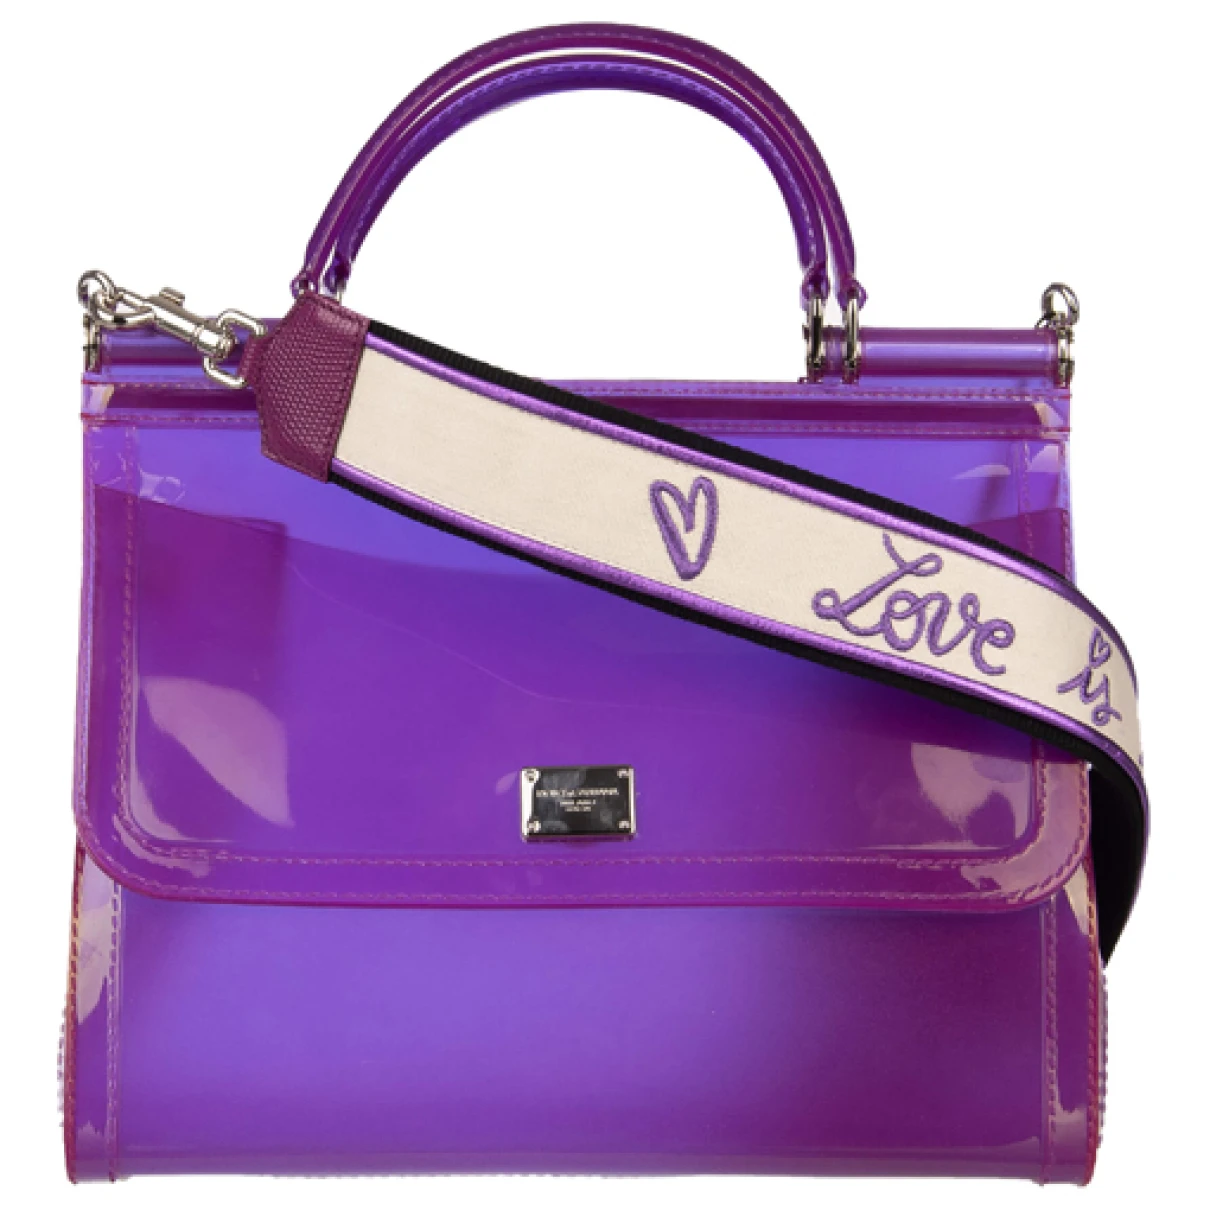 Pre-owned Dolce & Gabbana Sicily Handbag In Purple